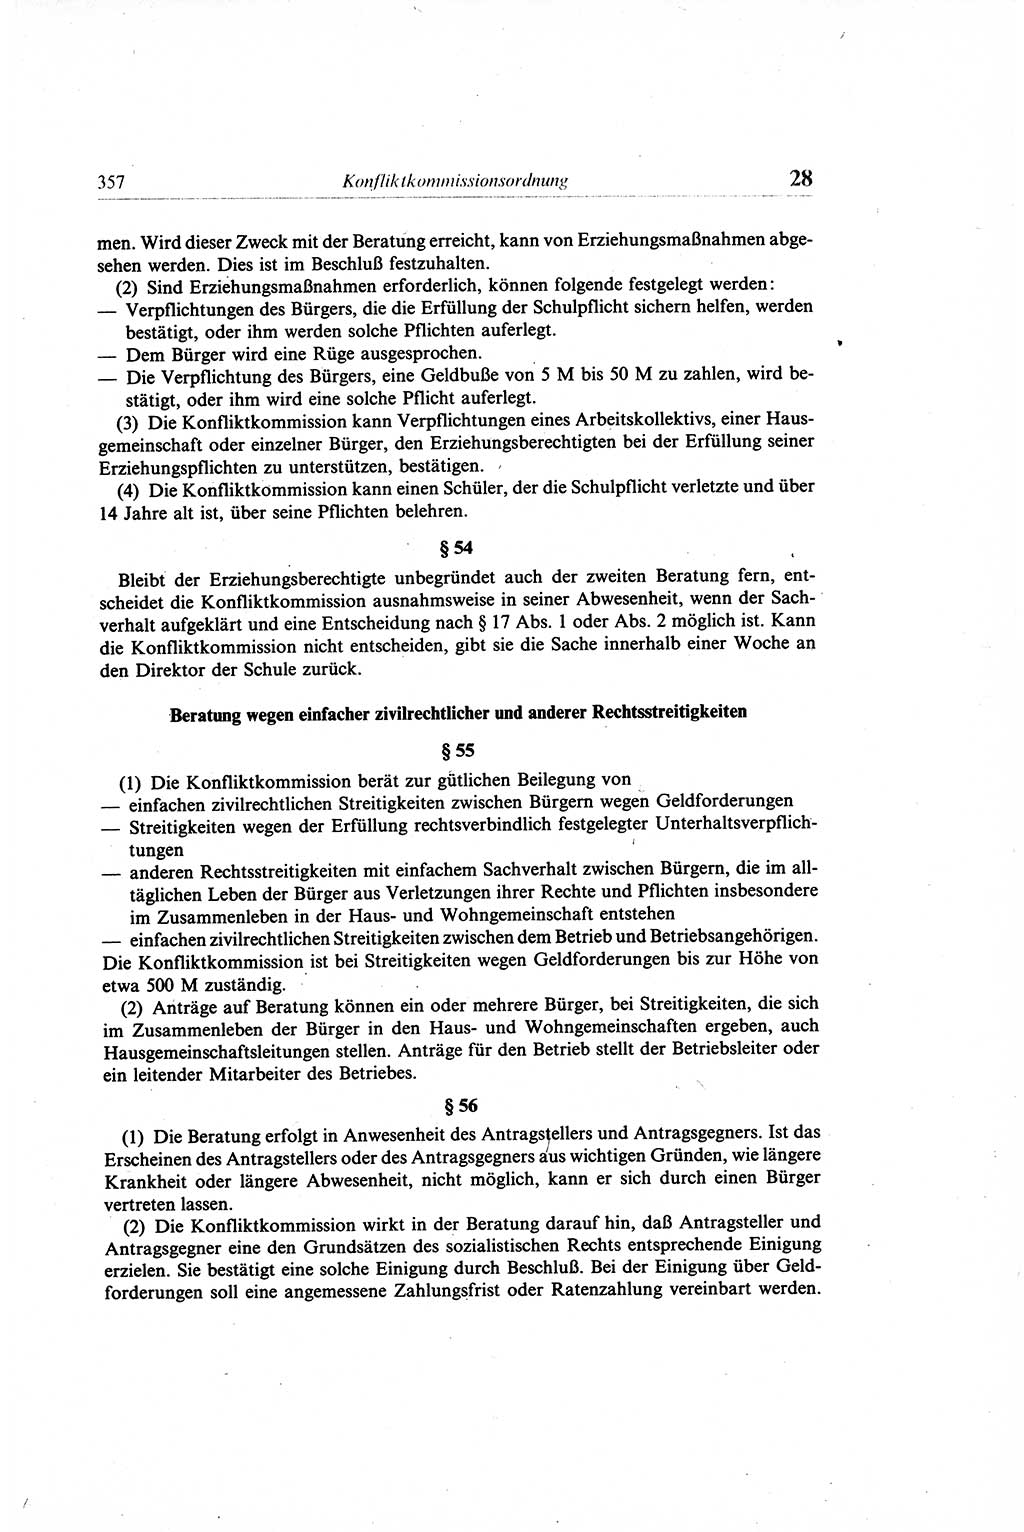 Gesetzbuch der Arbeit (GBA) und andere ausgewählte rechtliche Bestimmungen [Deutsche Demokratische Republik (DDR)] 1968, Seite 357 (GBA DDR 1968, S. 357)